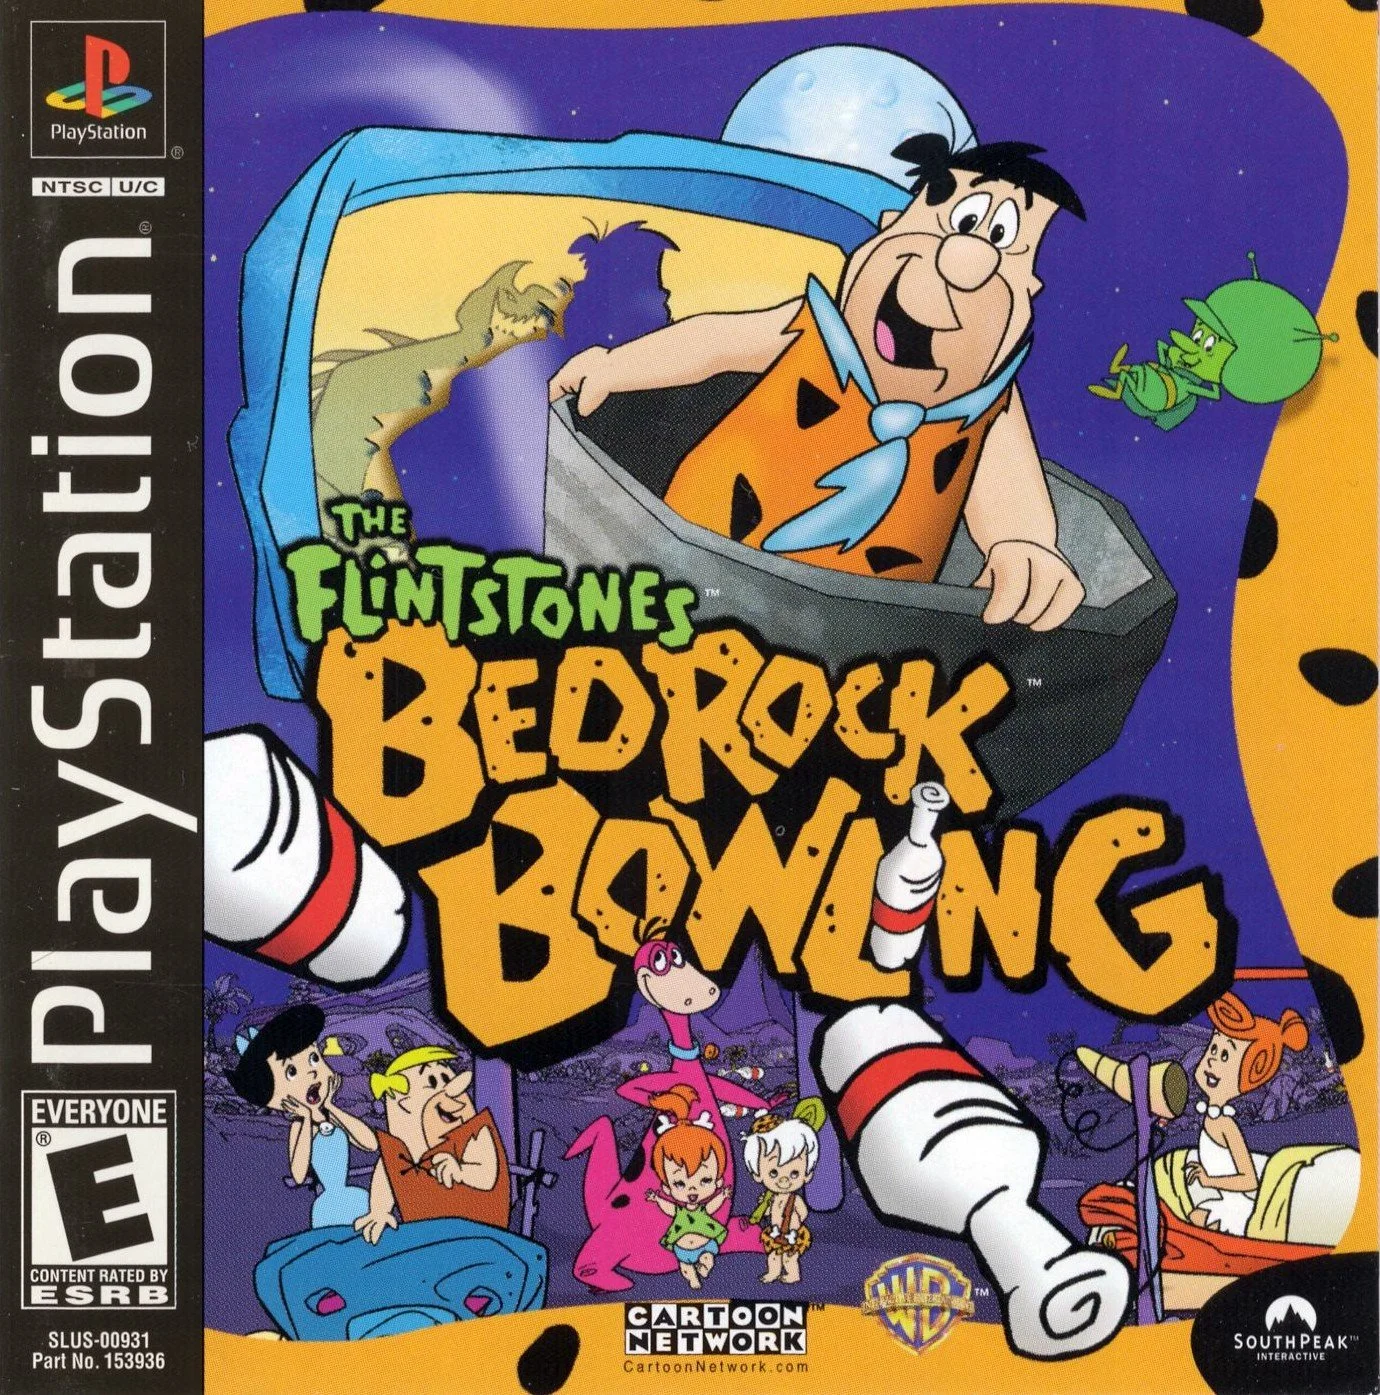 The Flintstones Bedrock Bowling